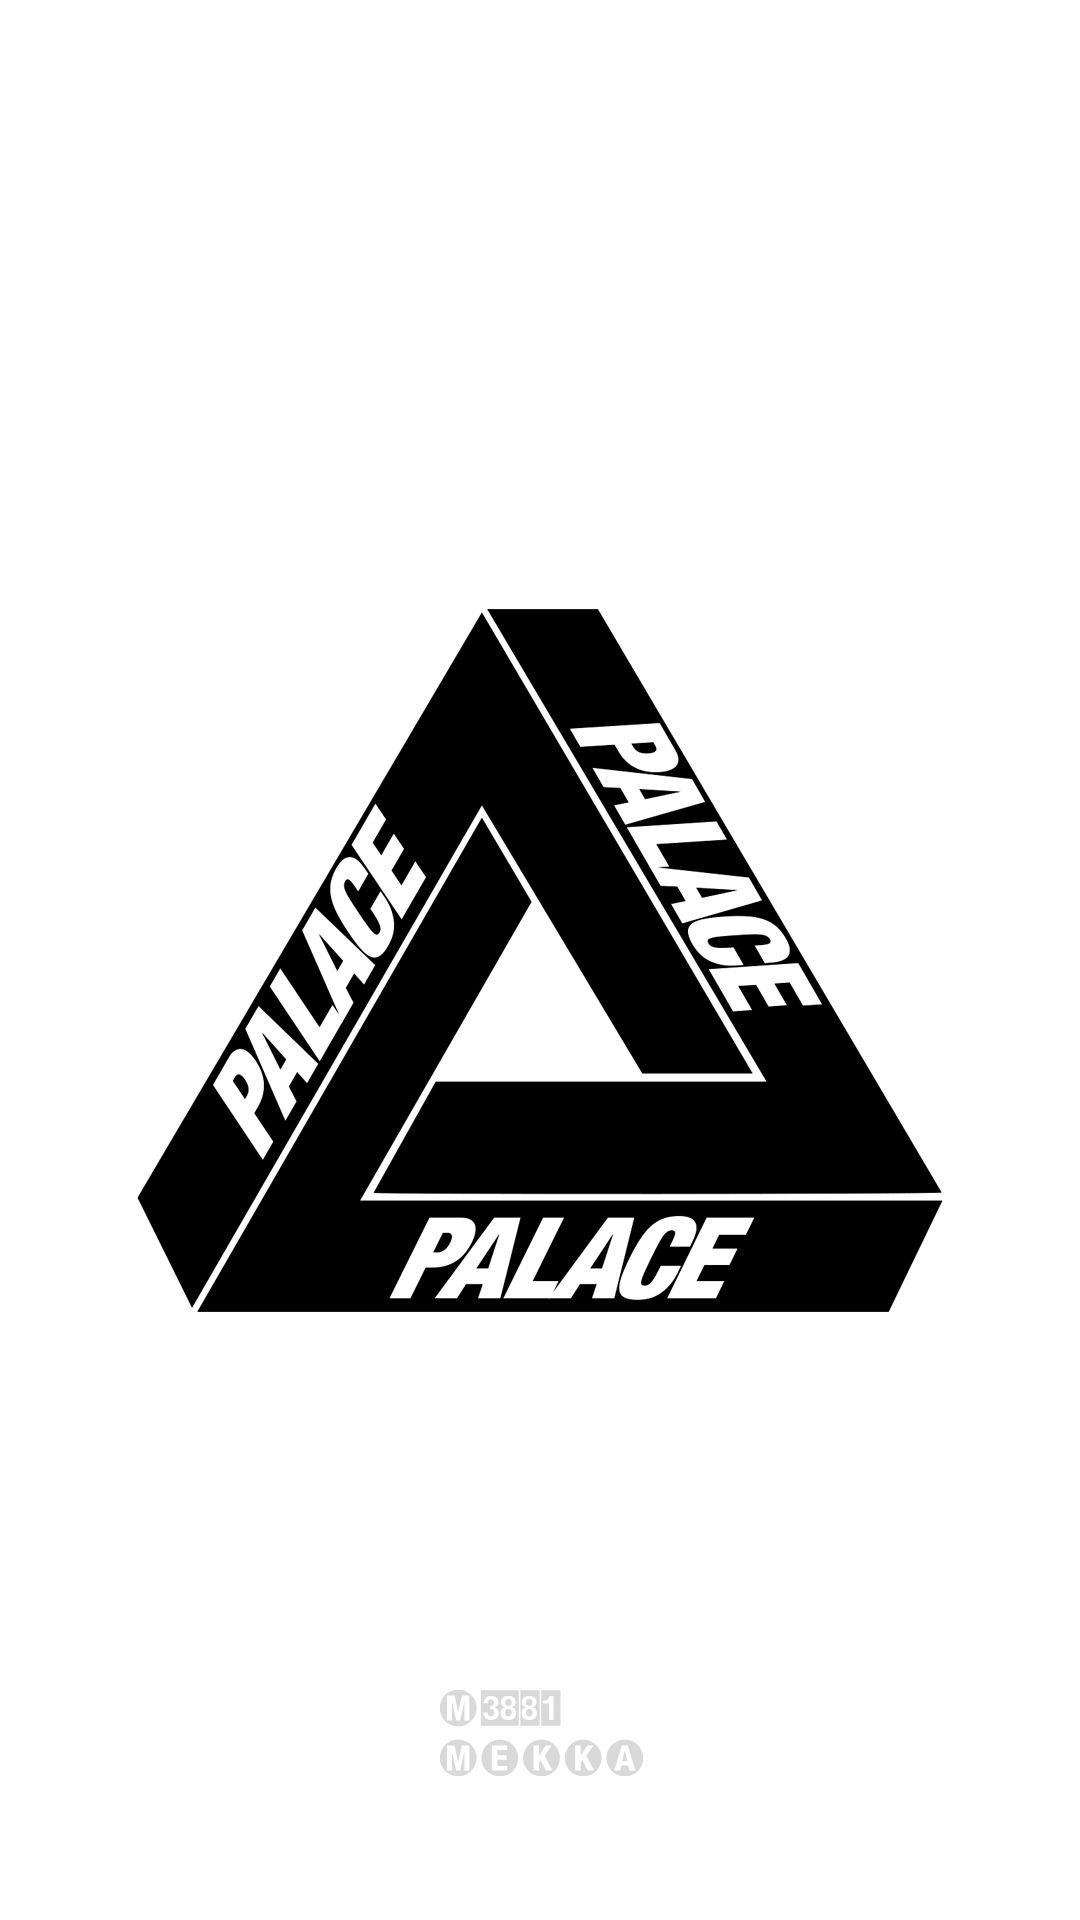 Palace Skateboards [M] – MEKKA GALLERY